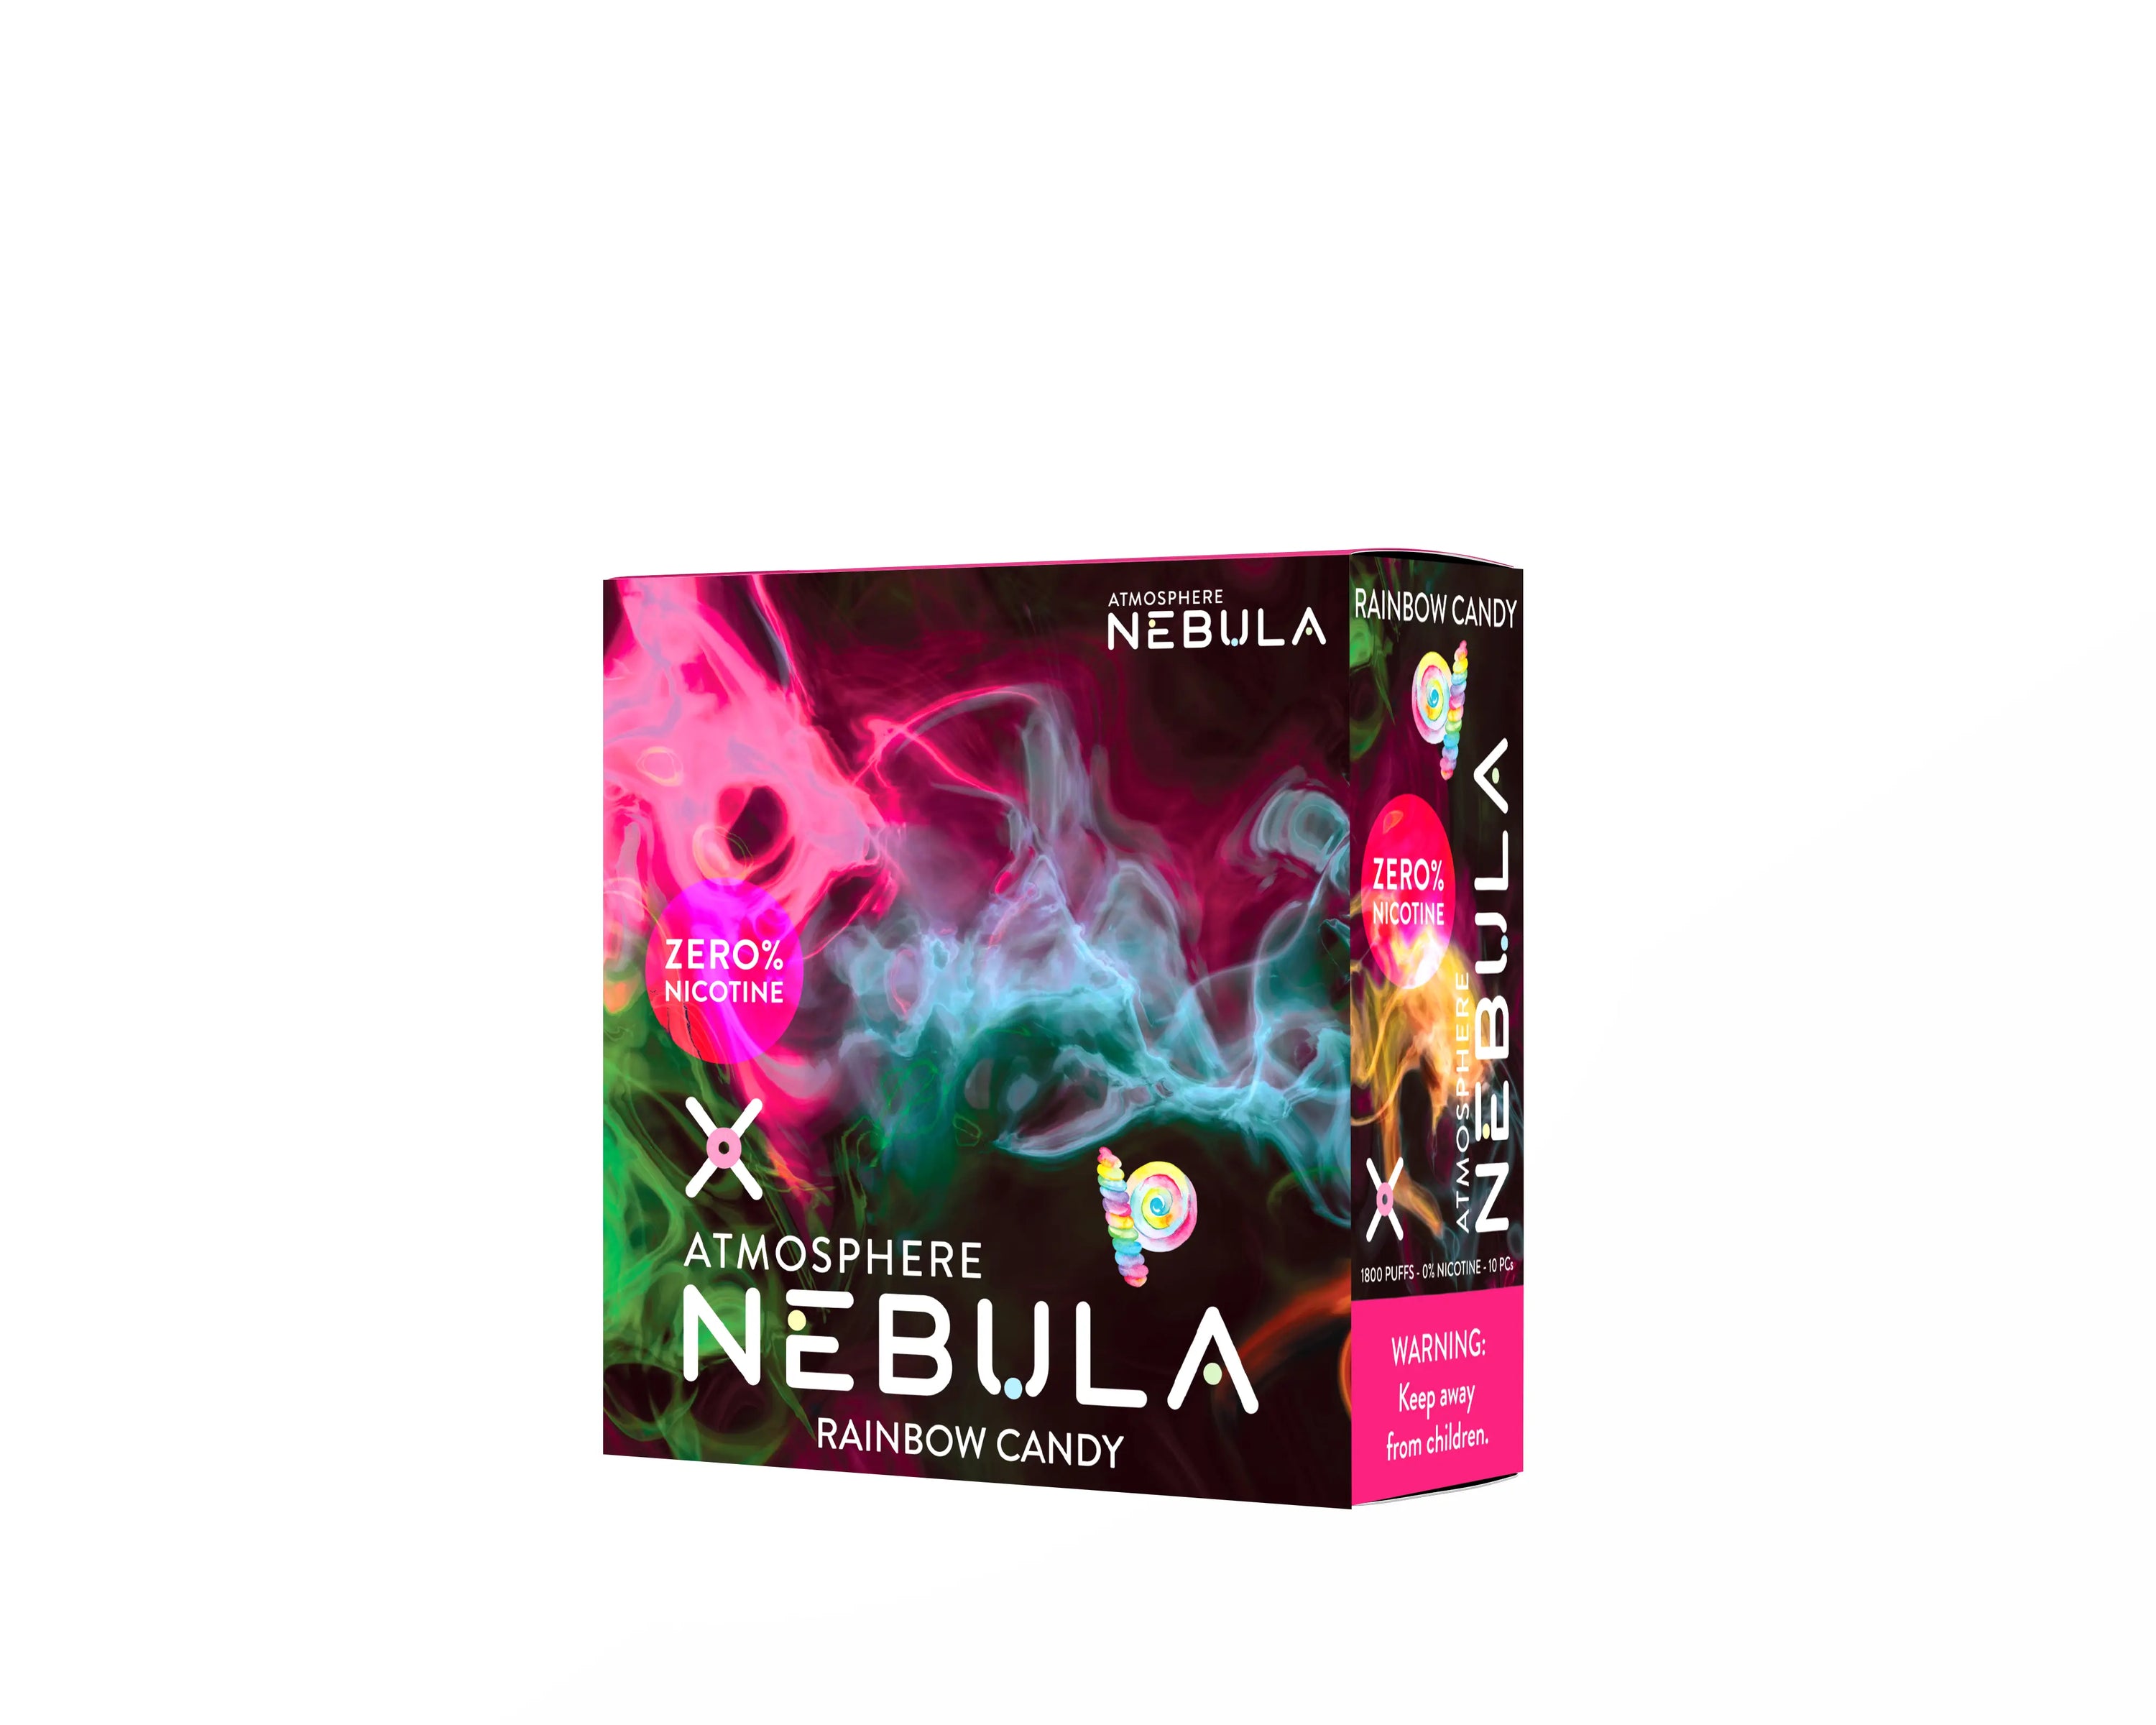 Nebula Atmosphere 0% 1800 Puffs - Rainbow Candy - B2B Nebula